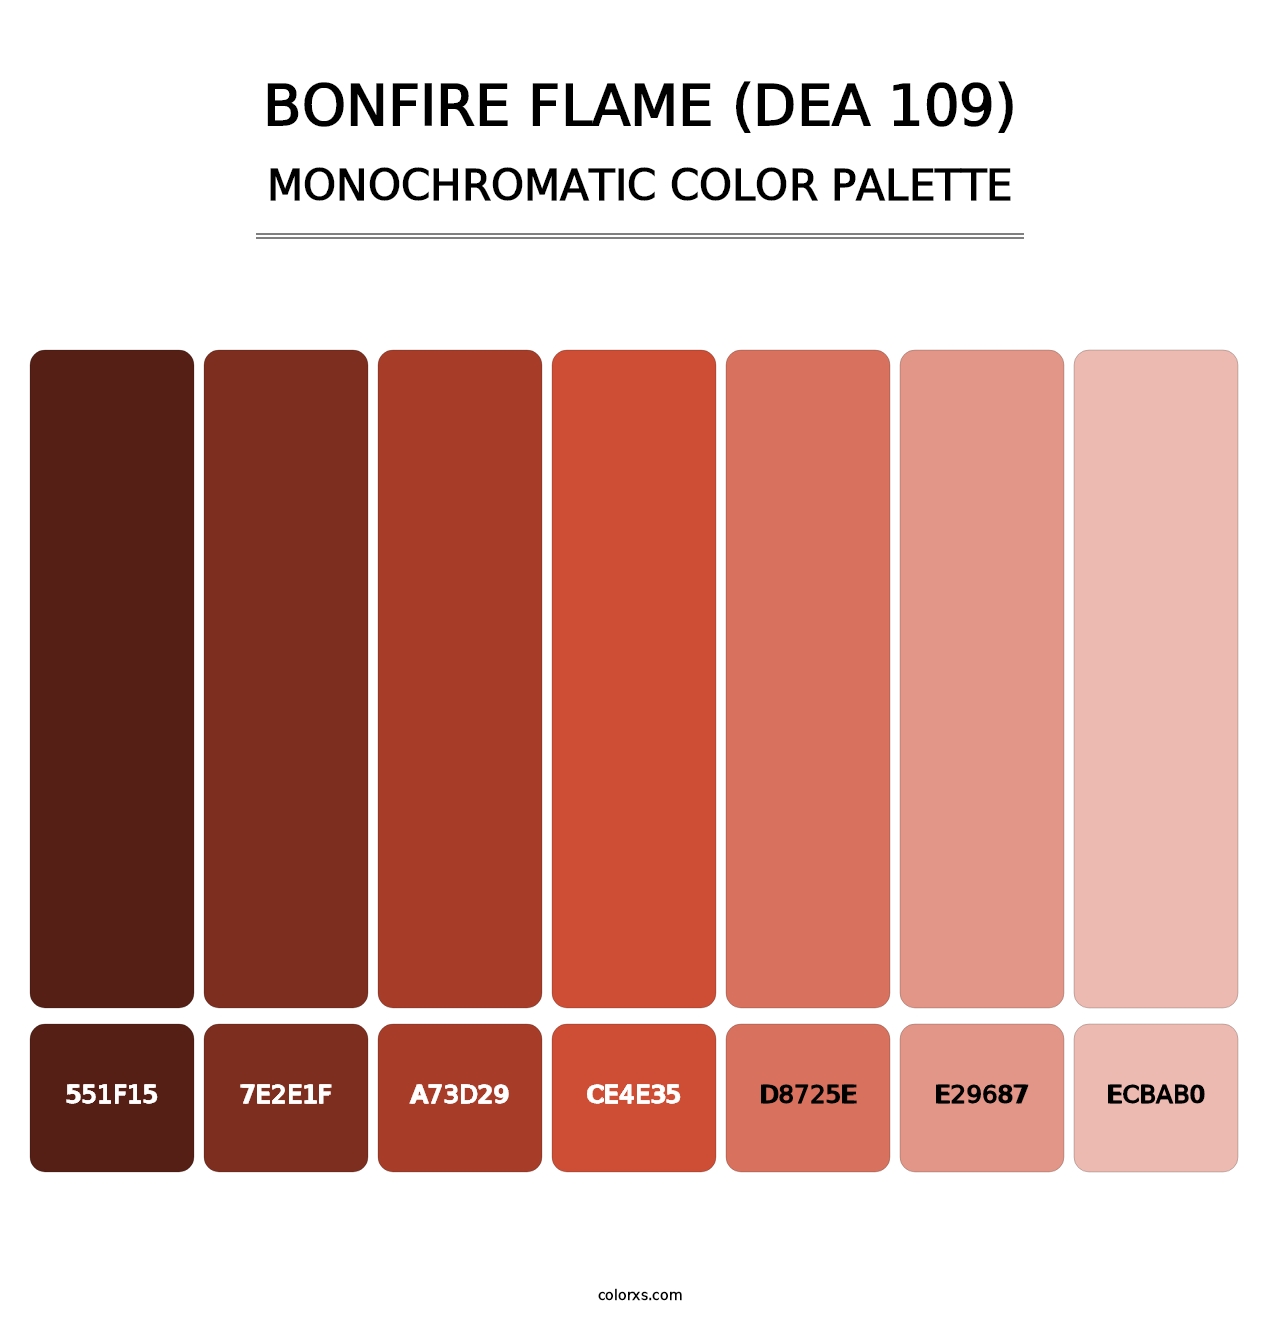 Bonfire Flame (DEA 109) - Monochromatic Color Palette